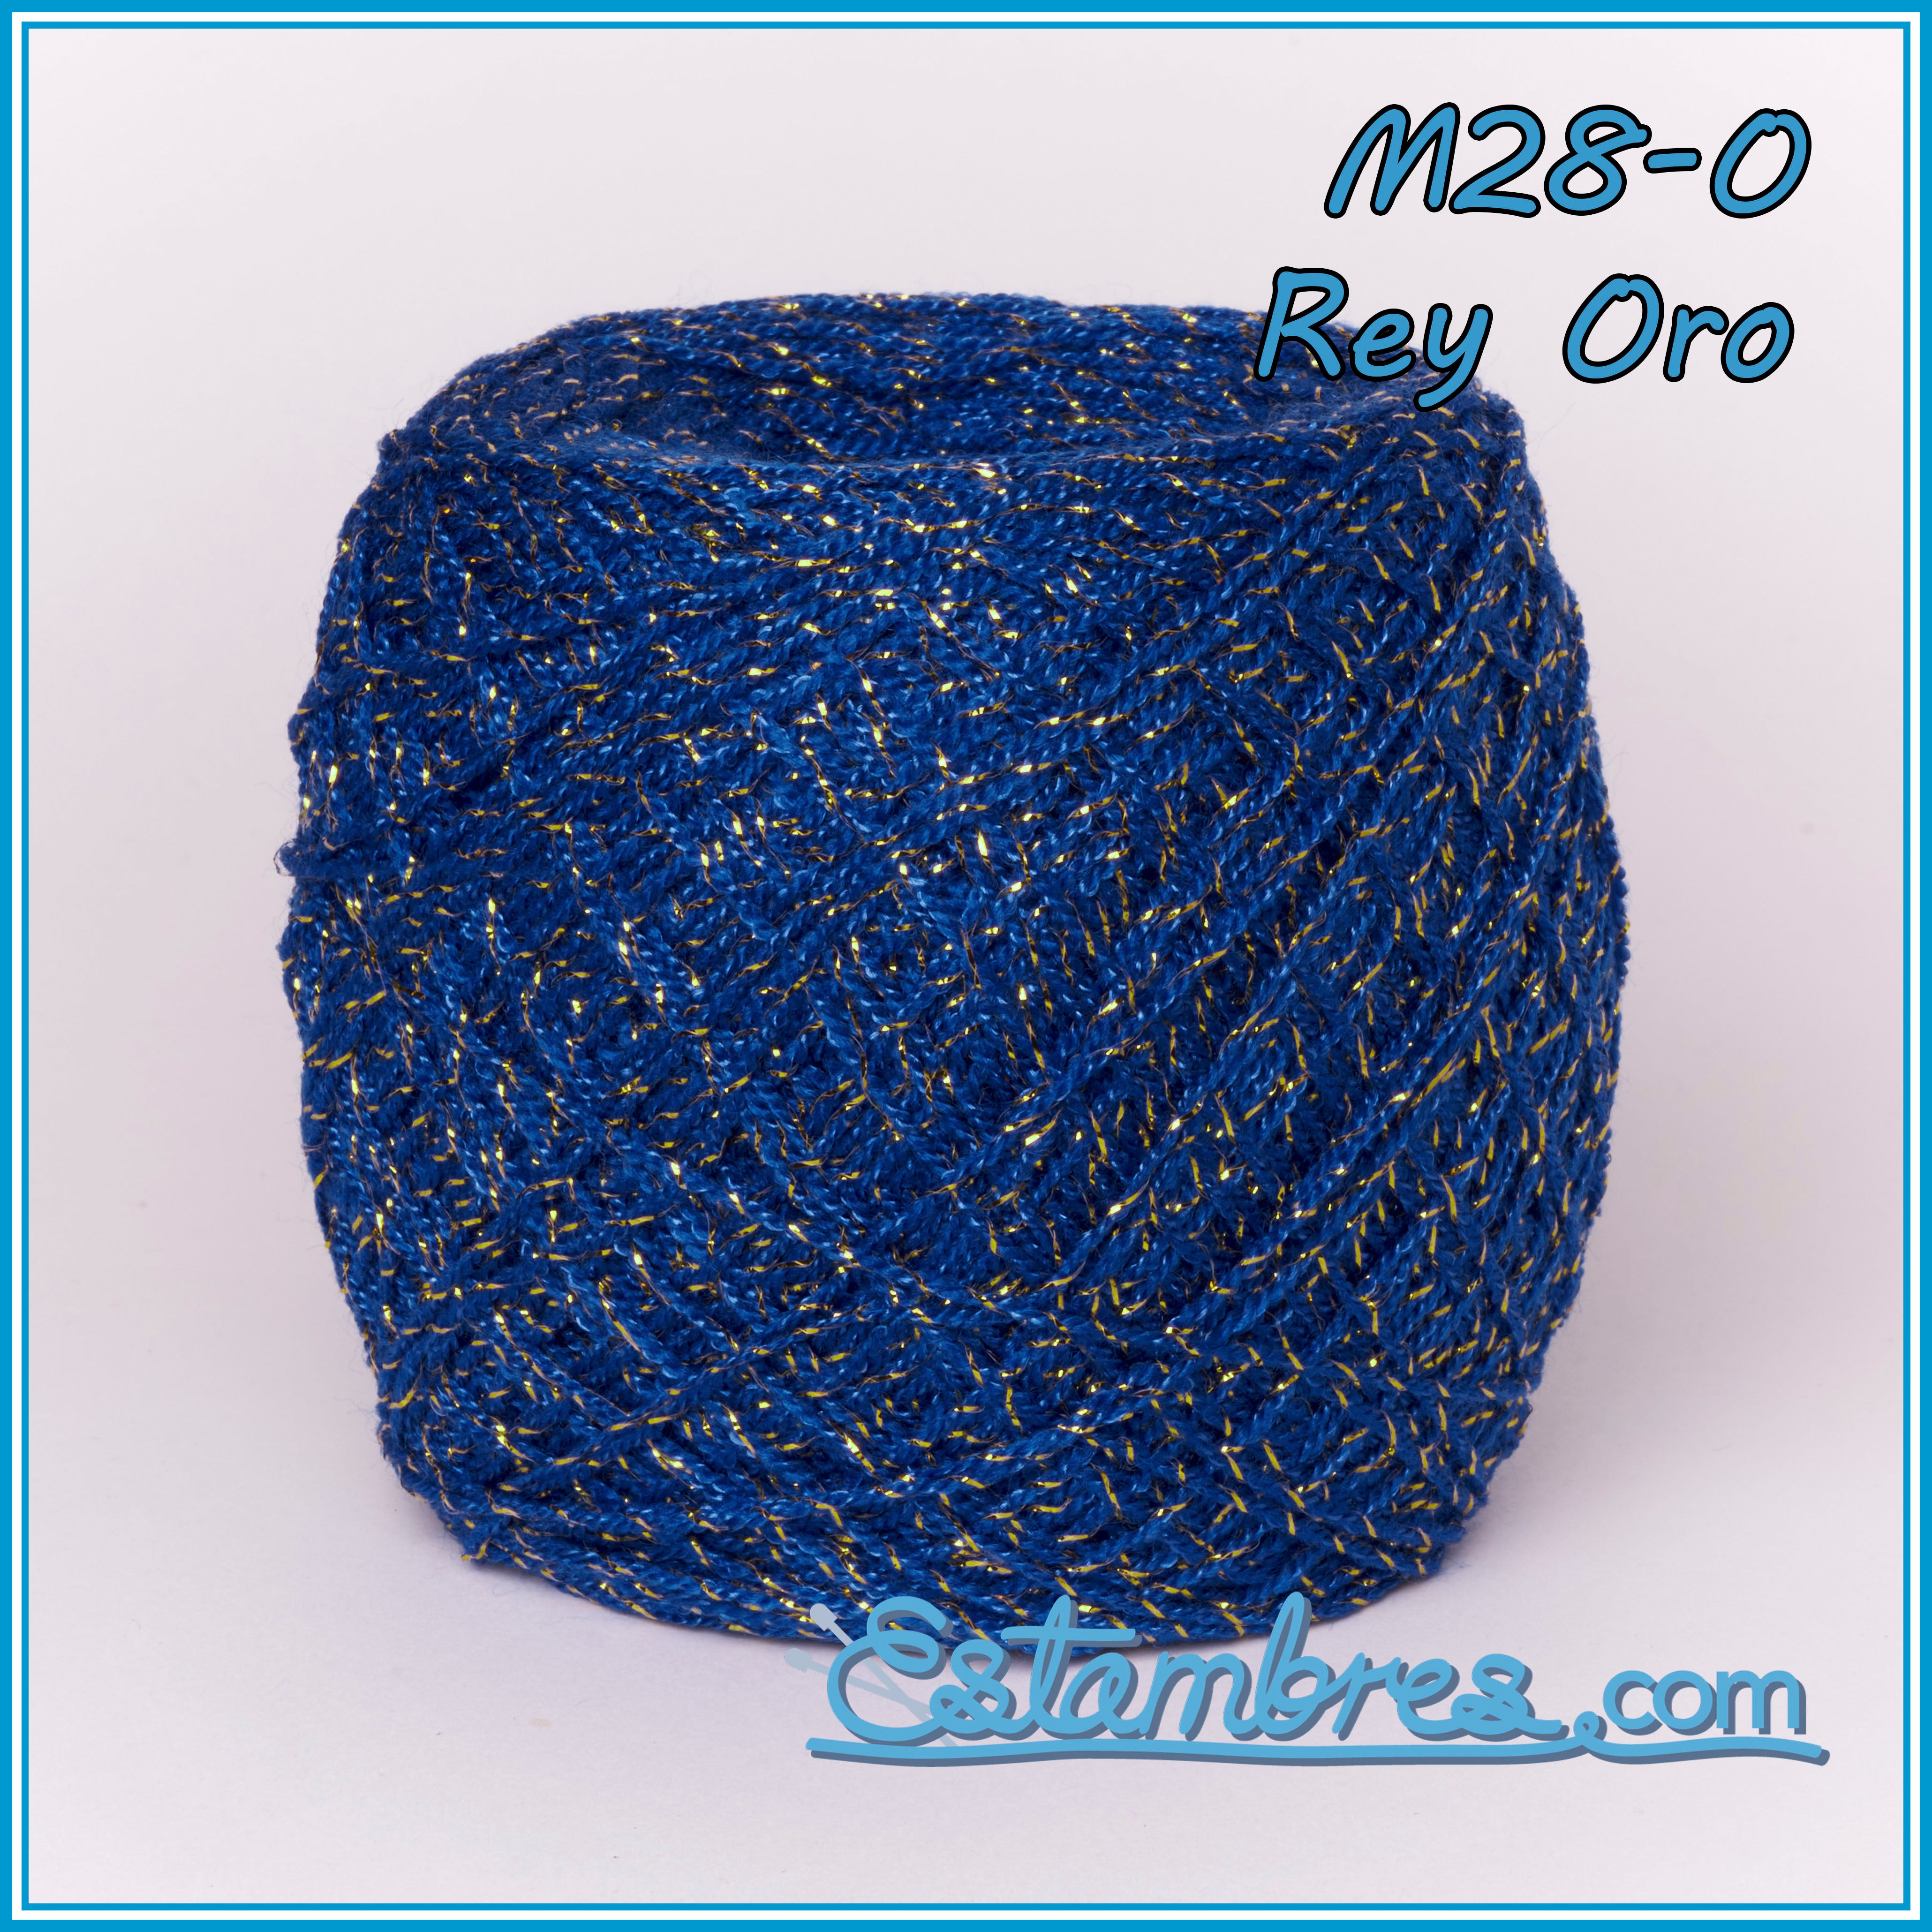  Hilo/Estambre Cristal para Tejer/Bordar Crochet a Mano de Mexico,  (Paquete de 6) Multicolor.